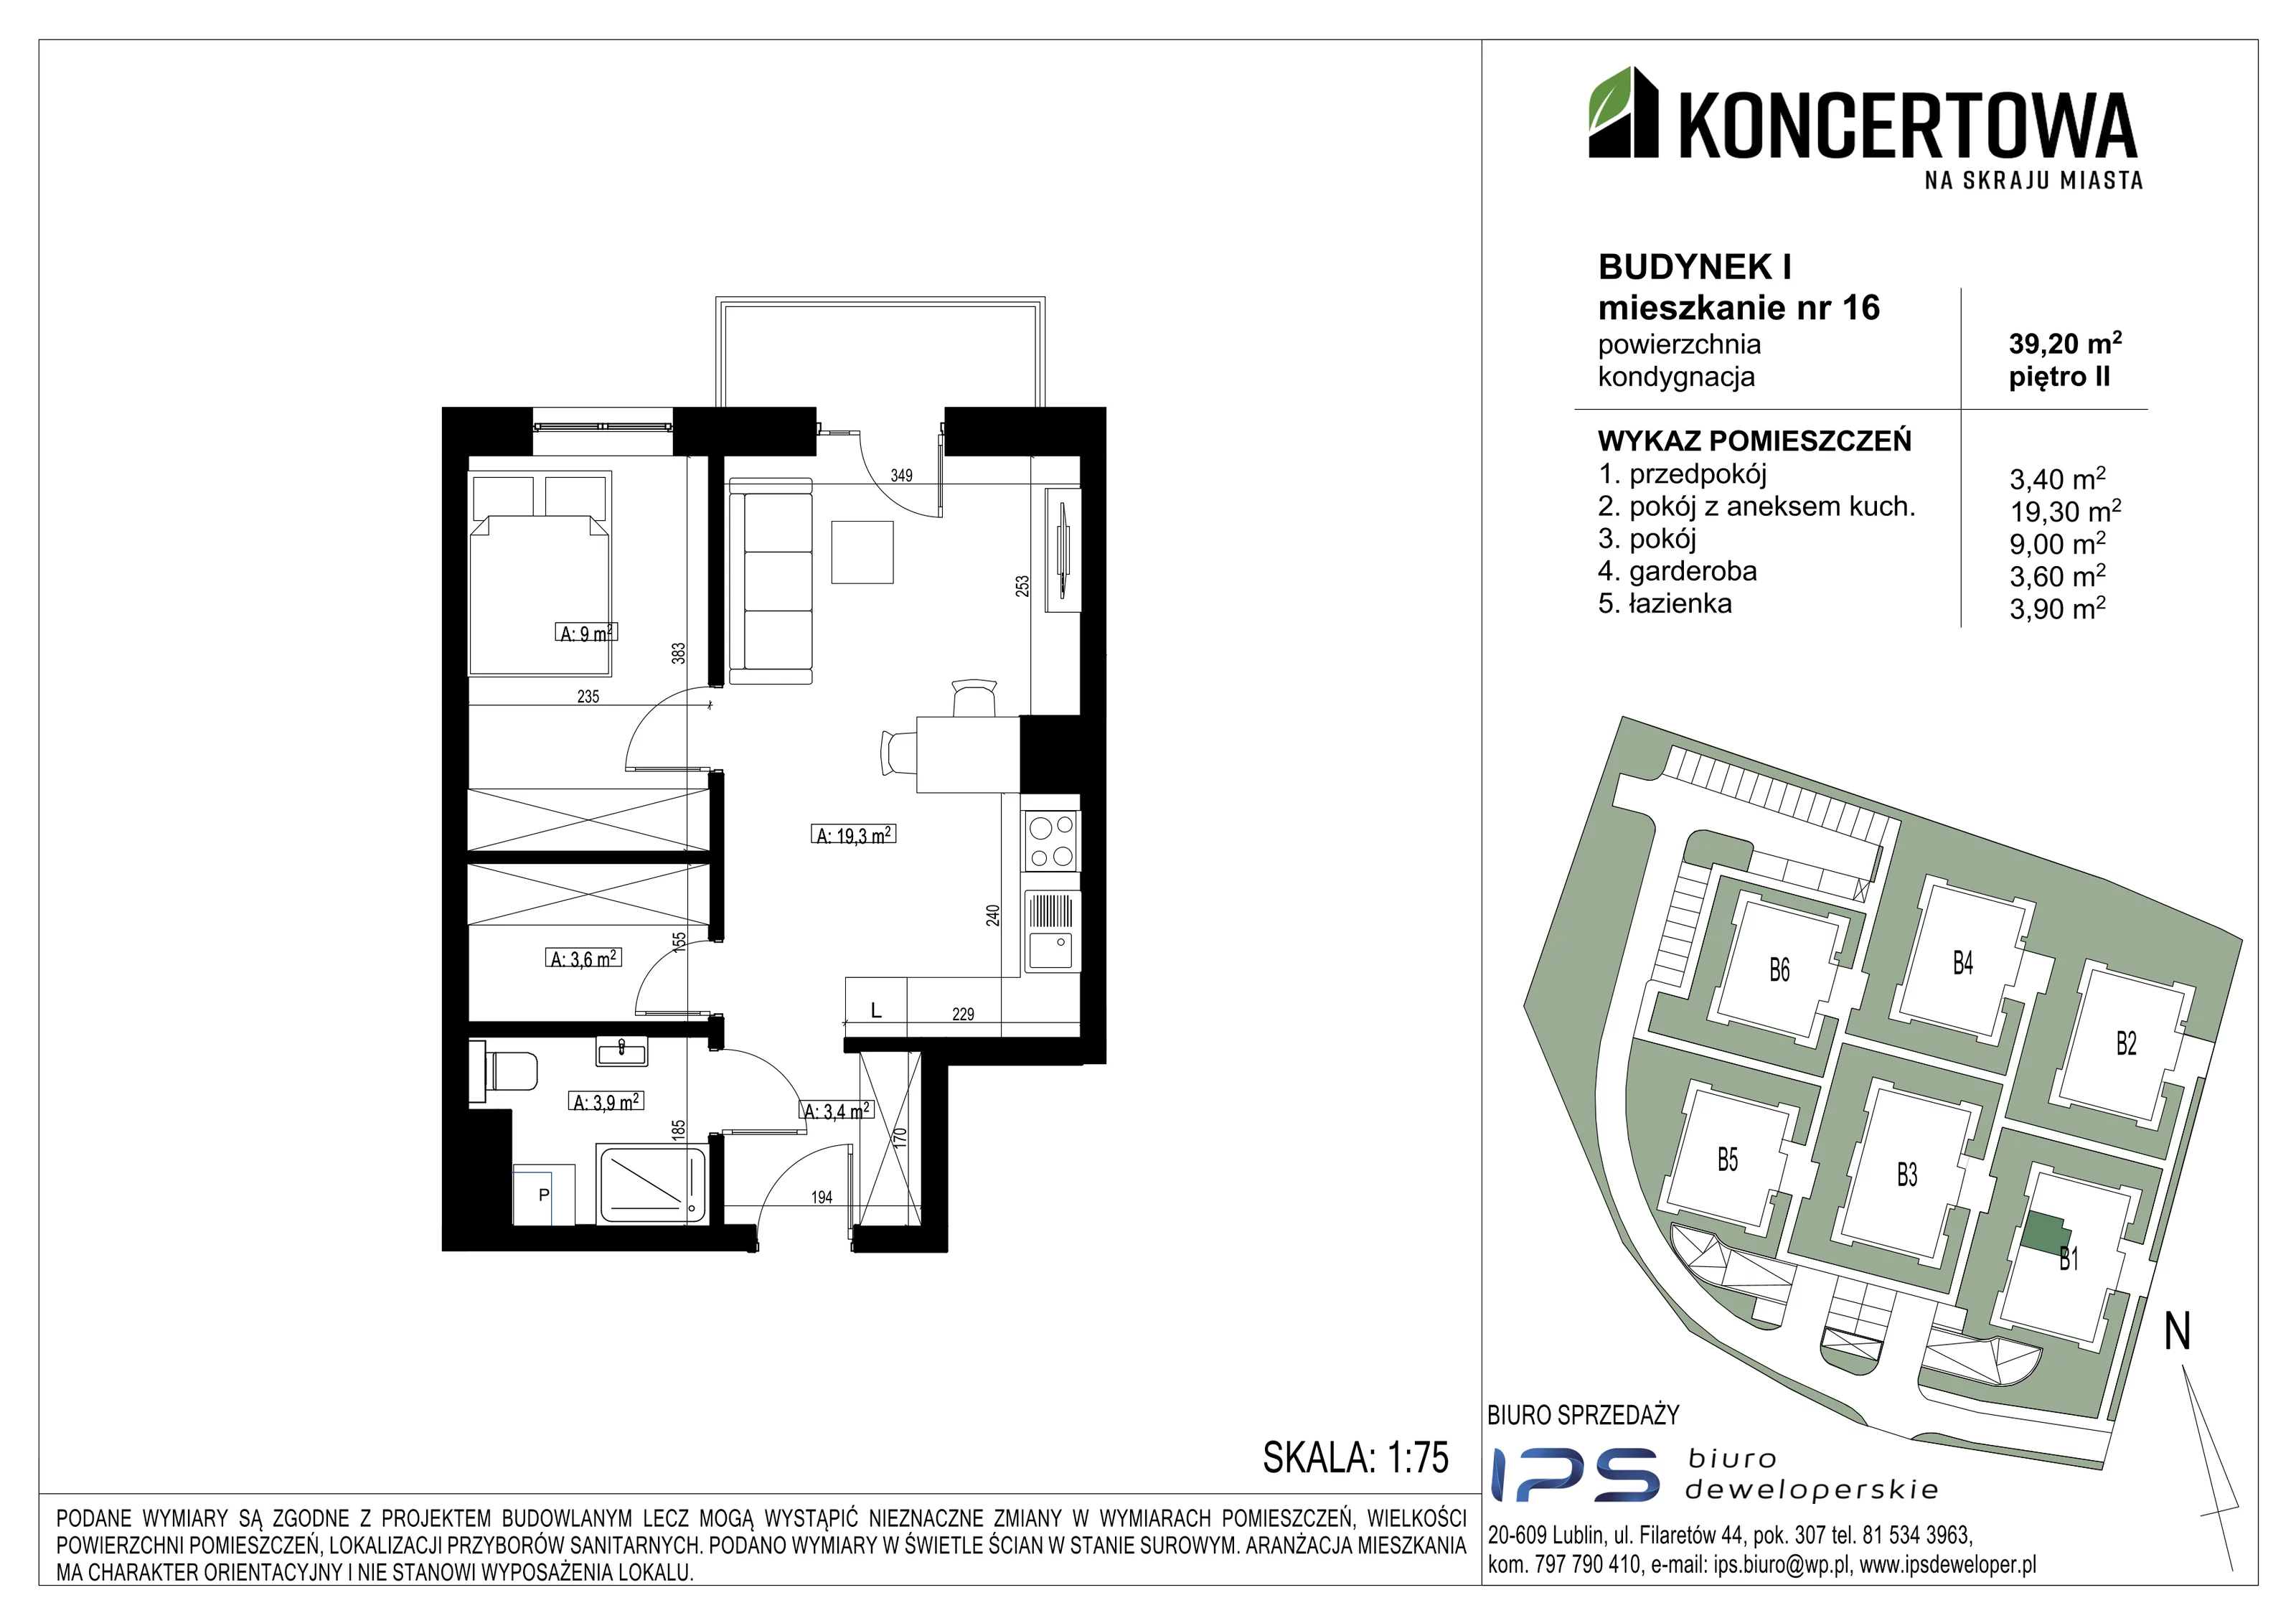 Mieszkanie 39,20 m², piętro 2, oferta nr 2_I/16, KONCERTOWA - Na skraju miasta, Lublin, Czechów Północny, Czechów Północny,  ul. Koncertowa